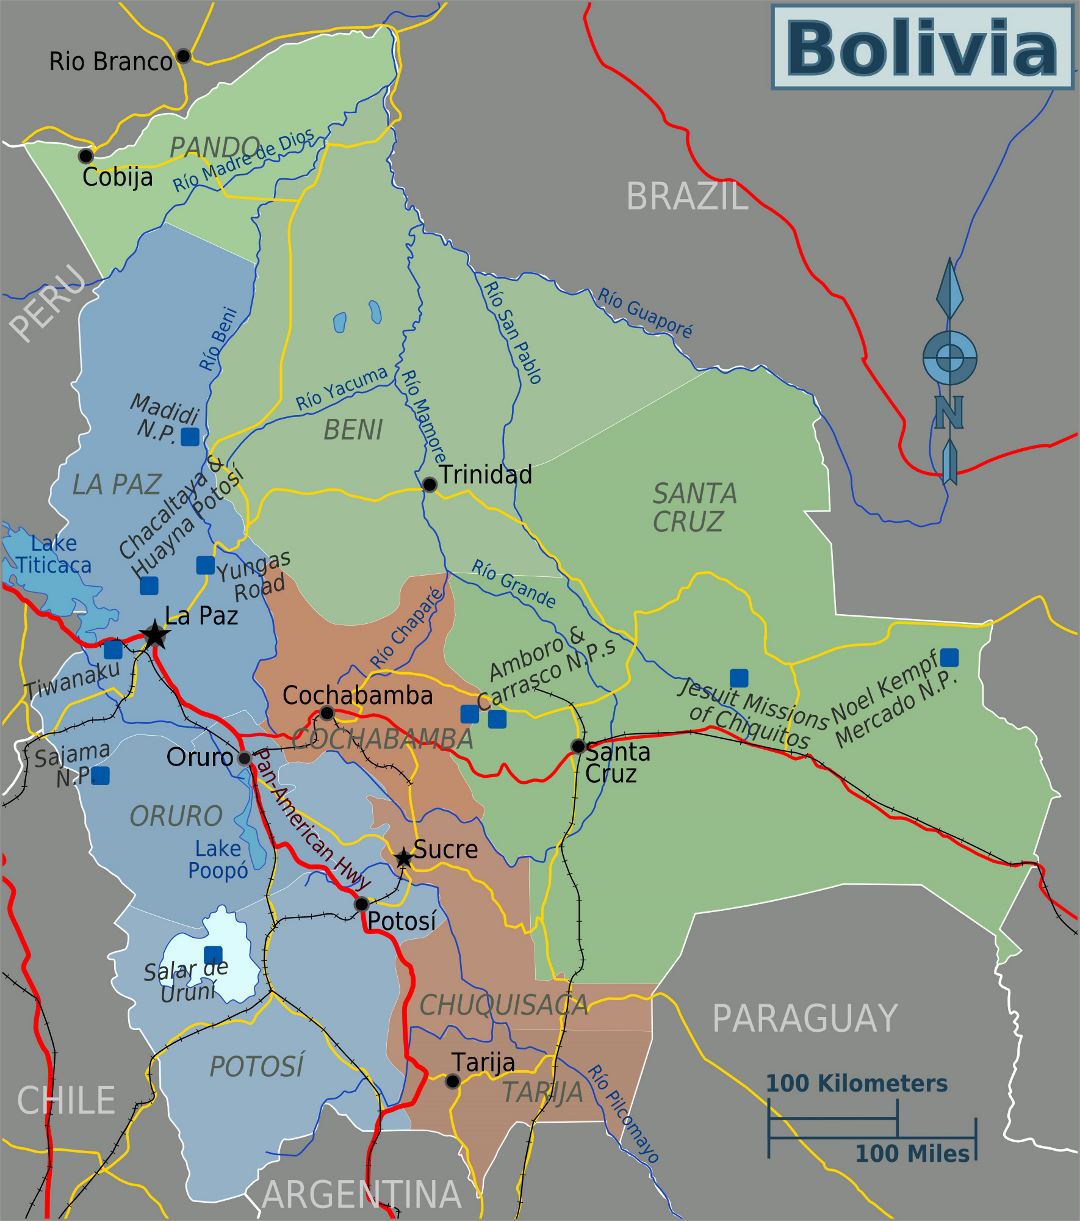 Detallado mapa político y administrativo de Bolivia